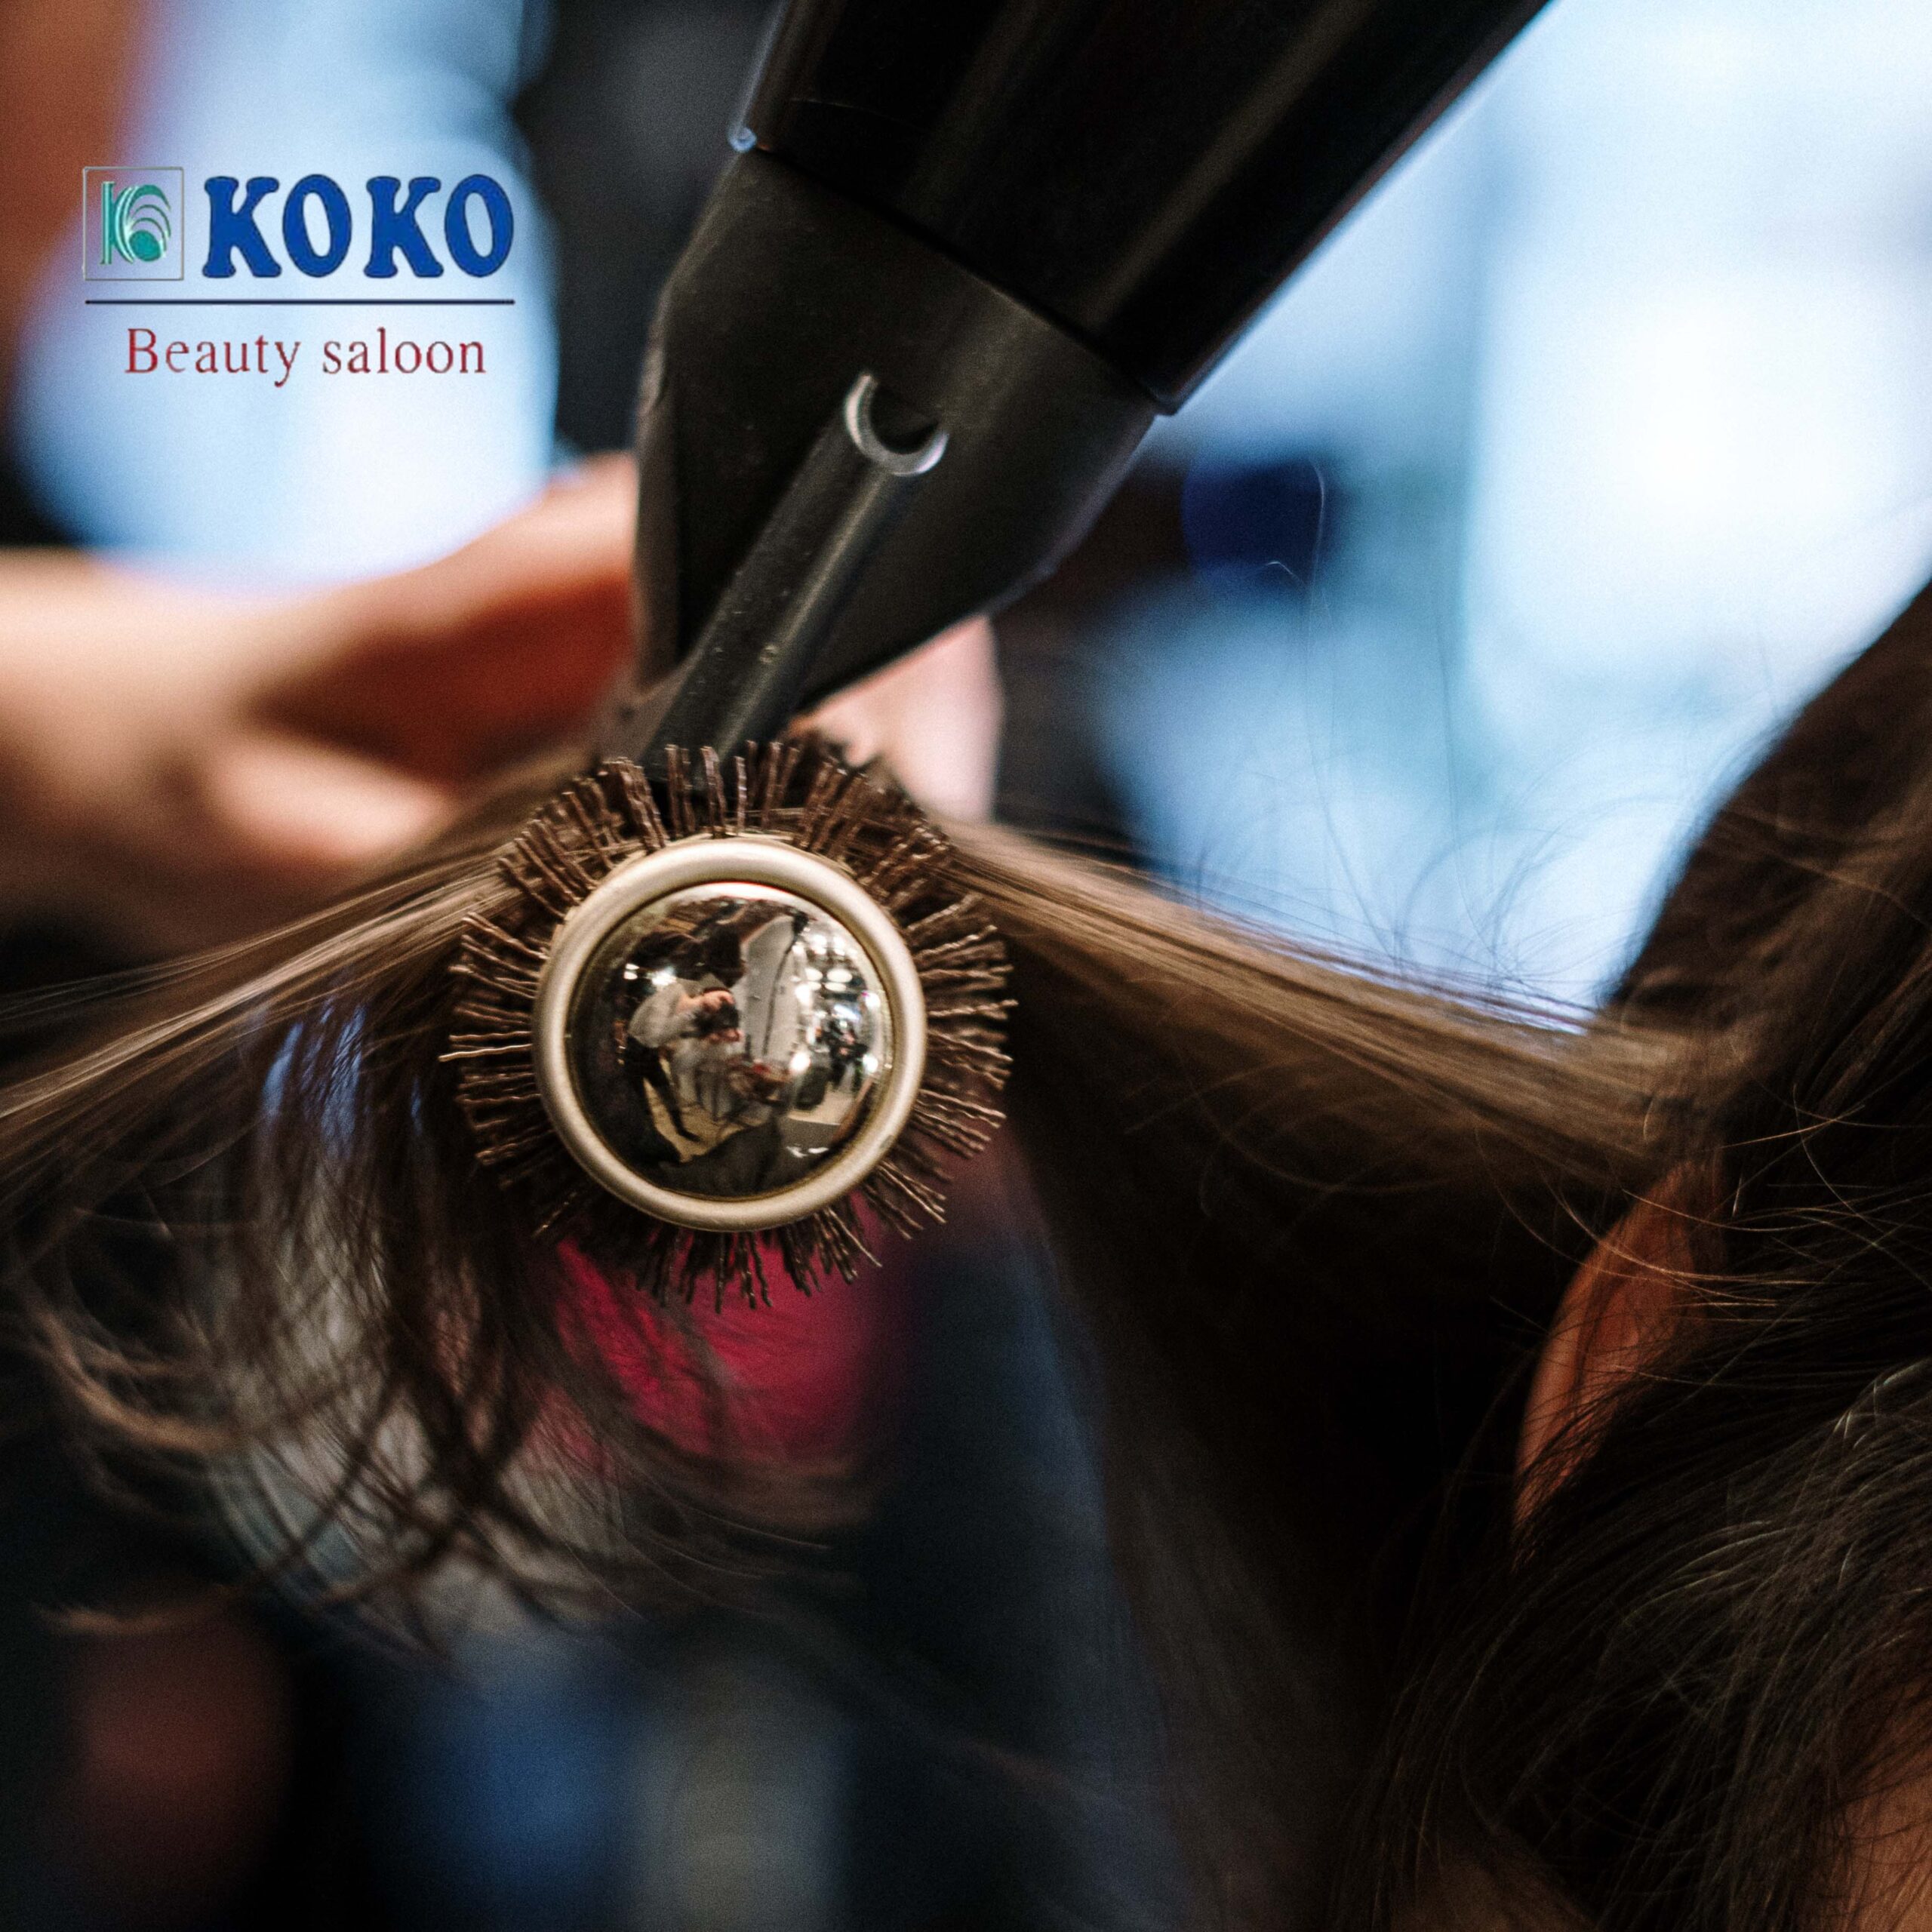 Koko Beauty Salon